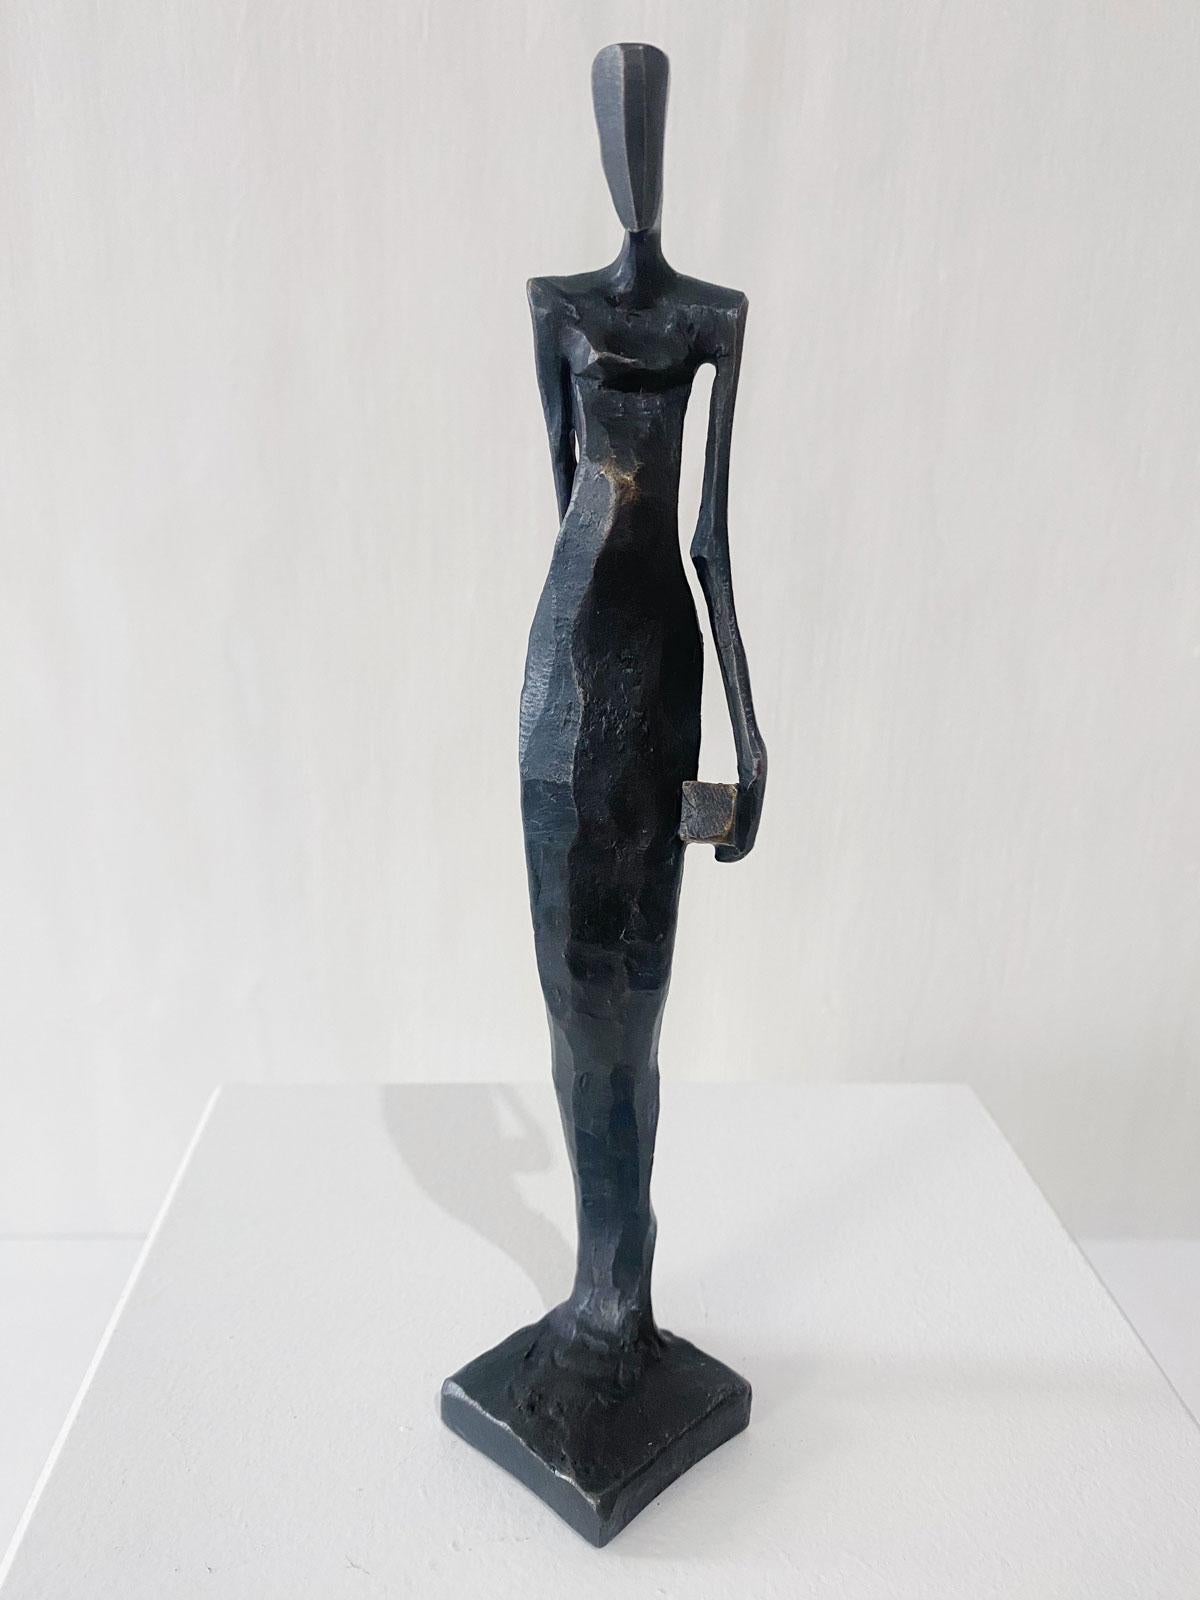 Frau mit Würfel ist eine elegante figurative Bronzeskulptur von Nando Kallweit.

Der stilisierte ägyptisch angehauchte Kopf ist der modernen jugendlichen Haltung nachempfunden, verweist aber auch auf die Bedeutung des Erbes. Ein schönes Stück für